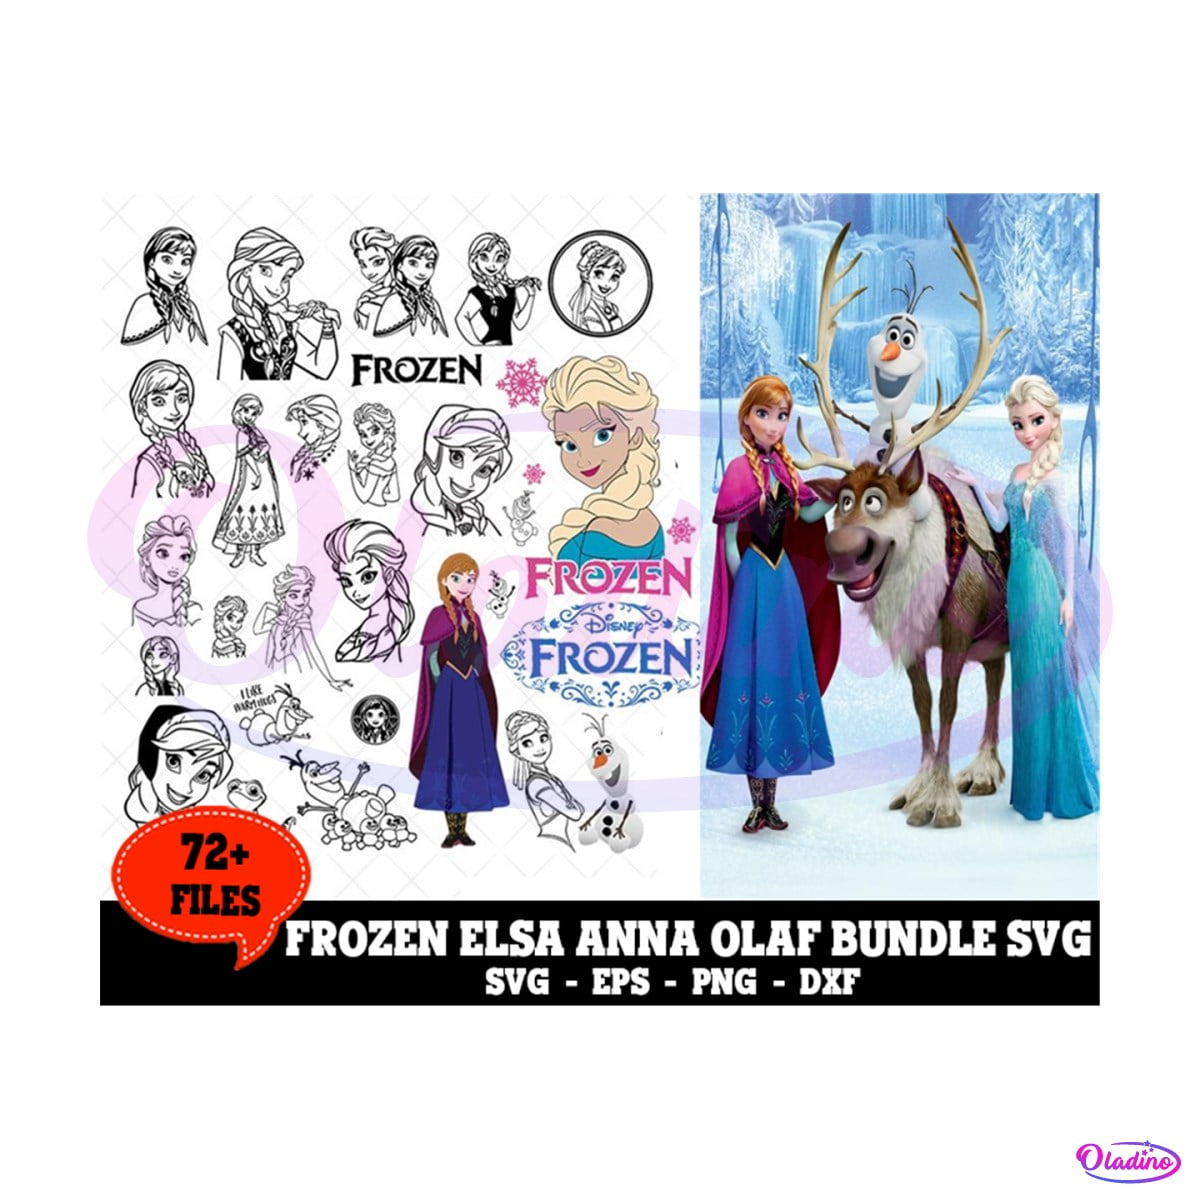 72+ Files Disney Frozen Bundle SVG